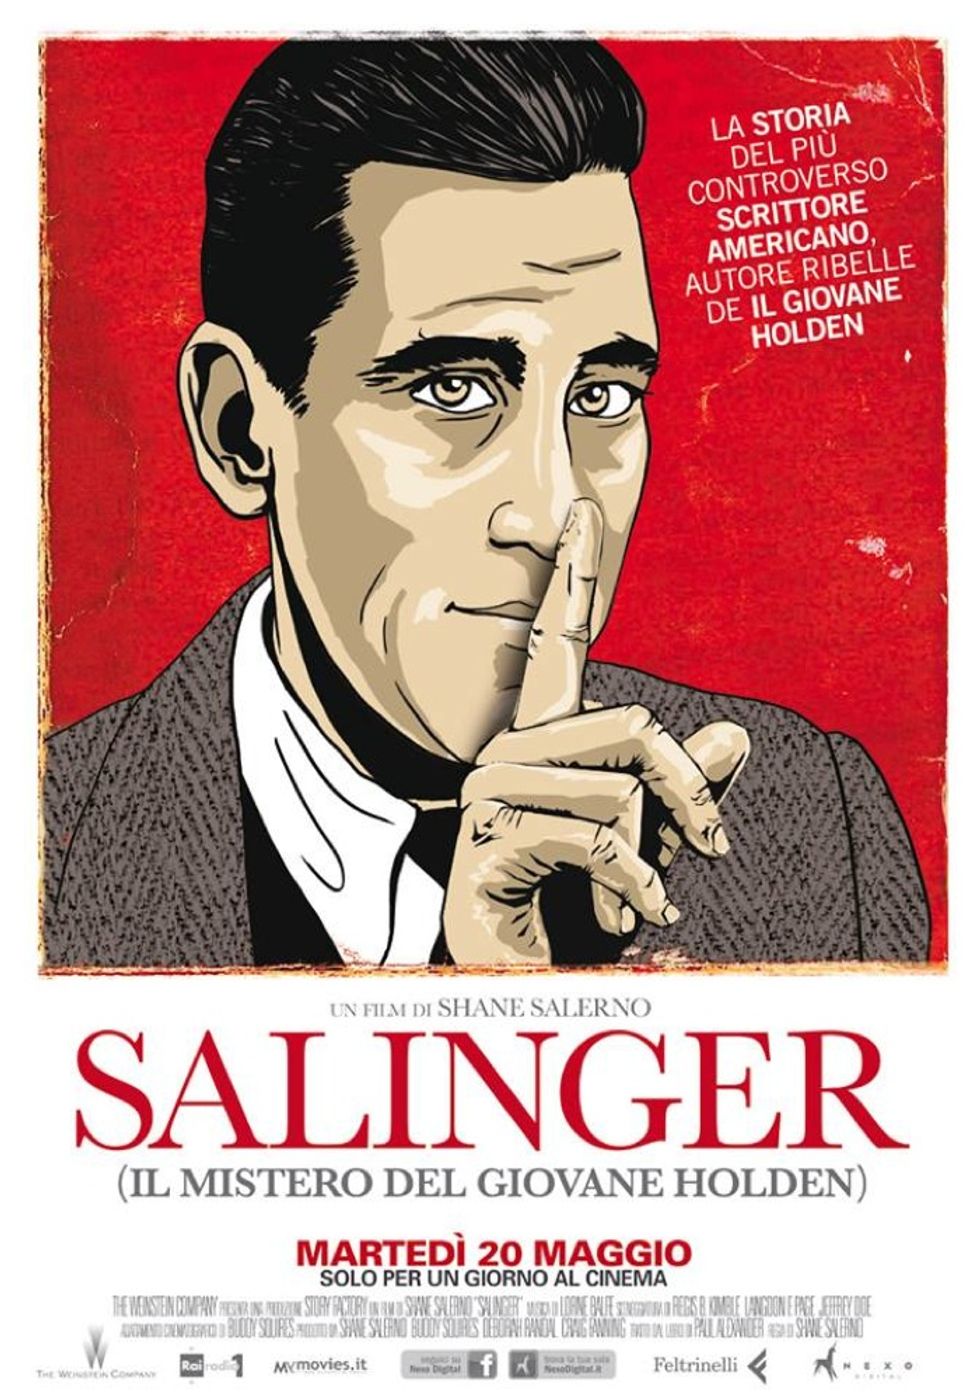 Il mistero della vita di J.D. Salinger